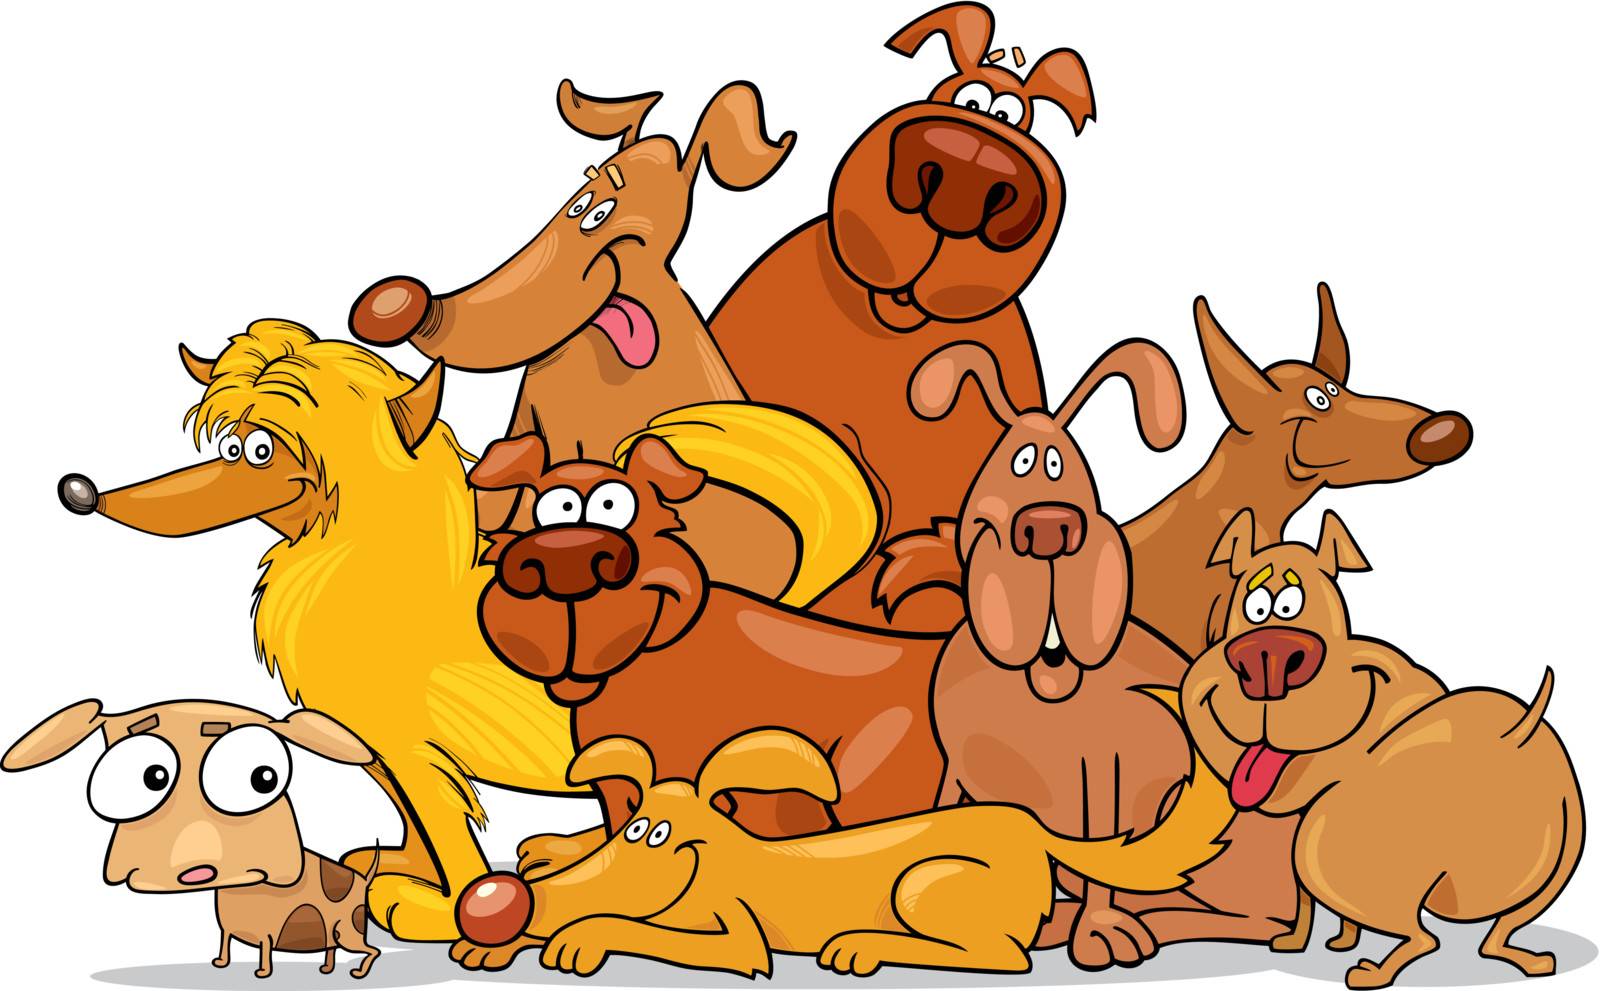 cartoon dogs group by izakowski